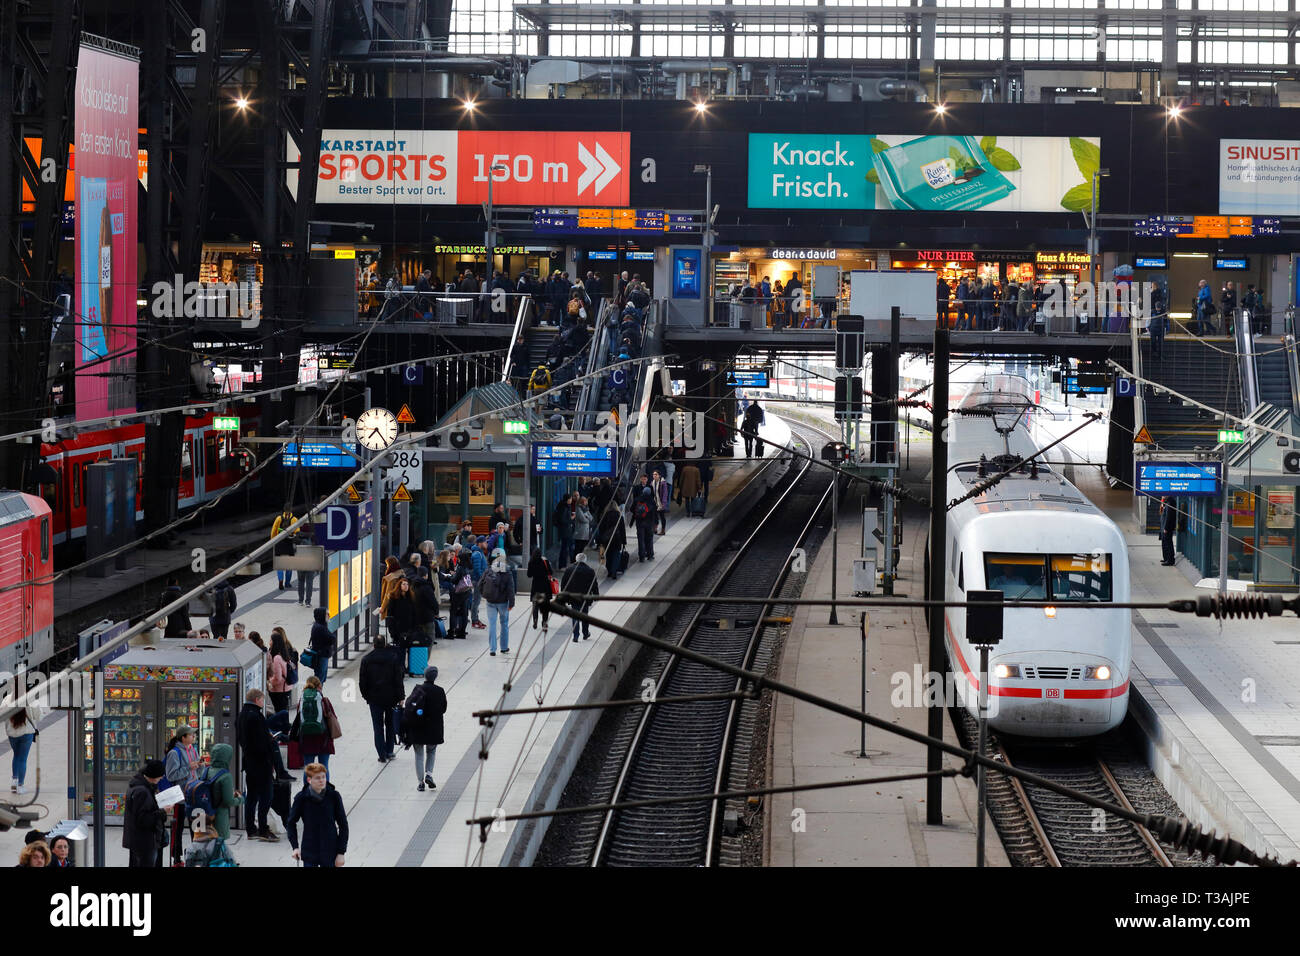 Une vue sur une gare très fréquentée à Hambourg Hbf, Hambourg, Allemagne. Hauptbahnhof de Hambourg Banque D'Images